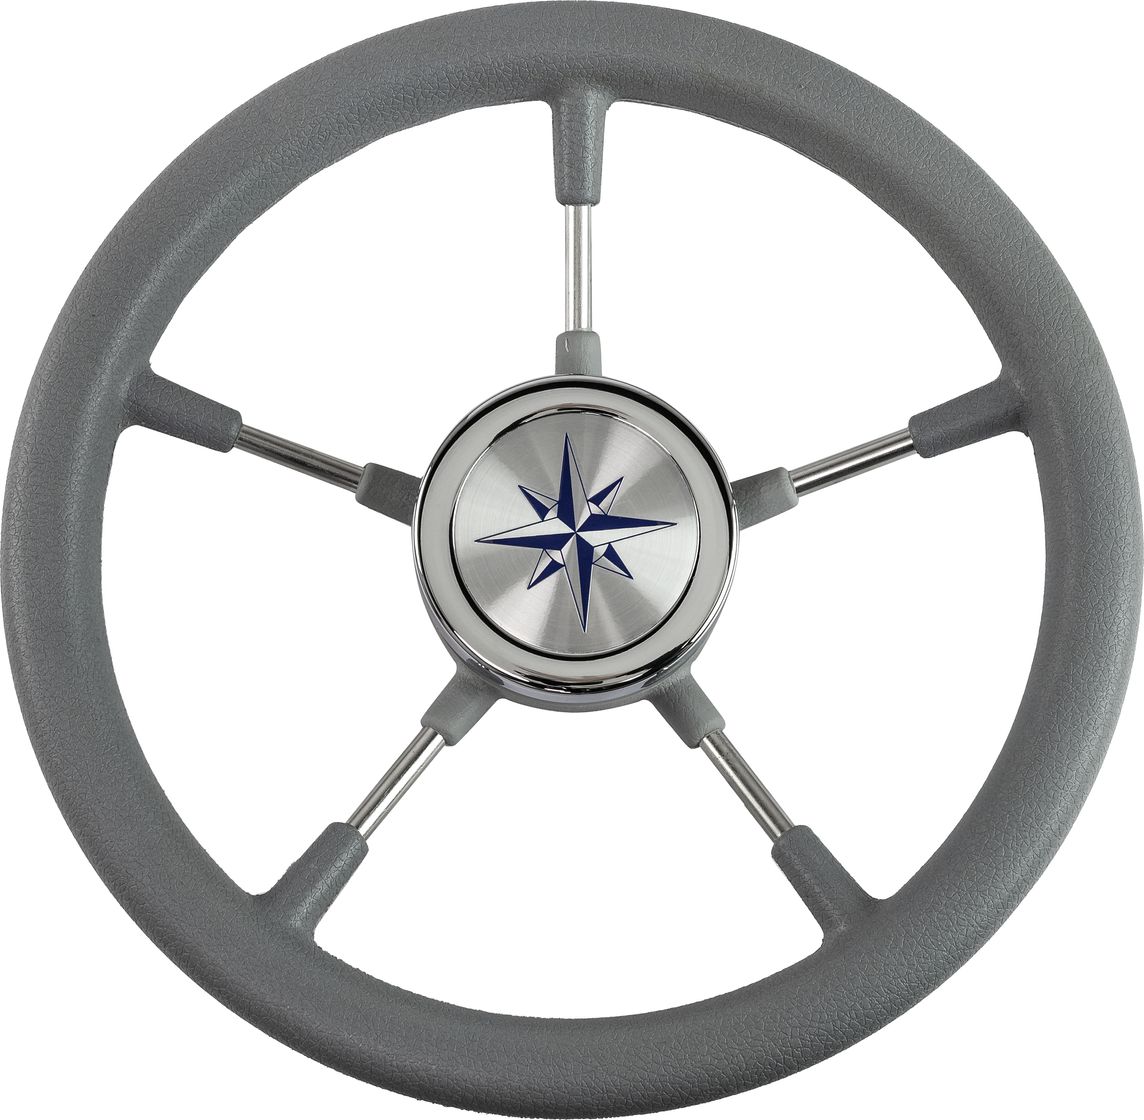 Рулевое колесо RIVA RSL обод серый, спицы серебряные д. 320 мм VN732022-03 рулевое колесо barracuda обод спицы серебряные д 350 мм vn135002 01